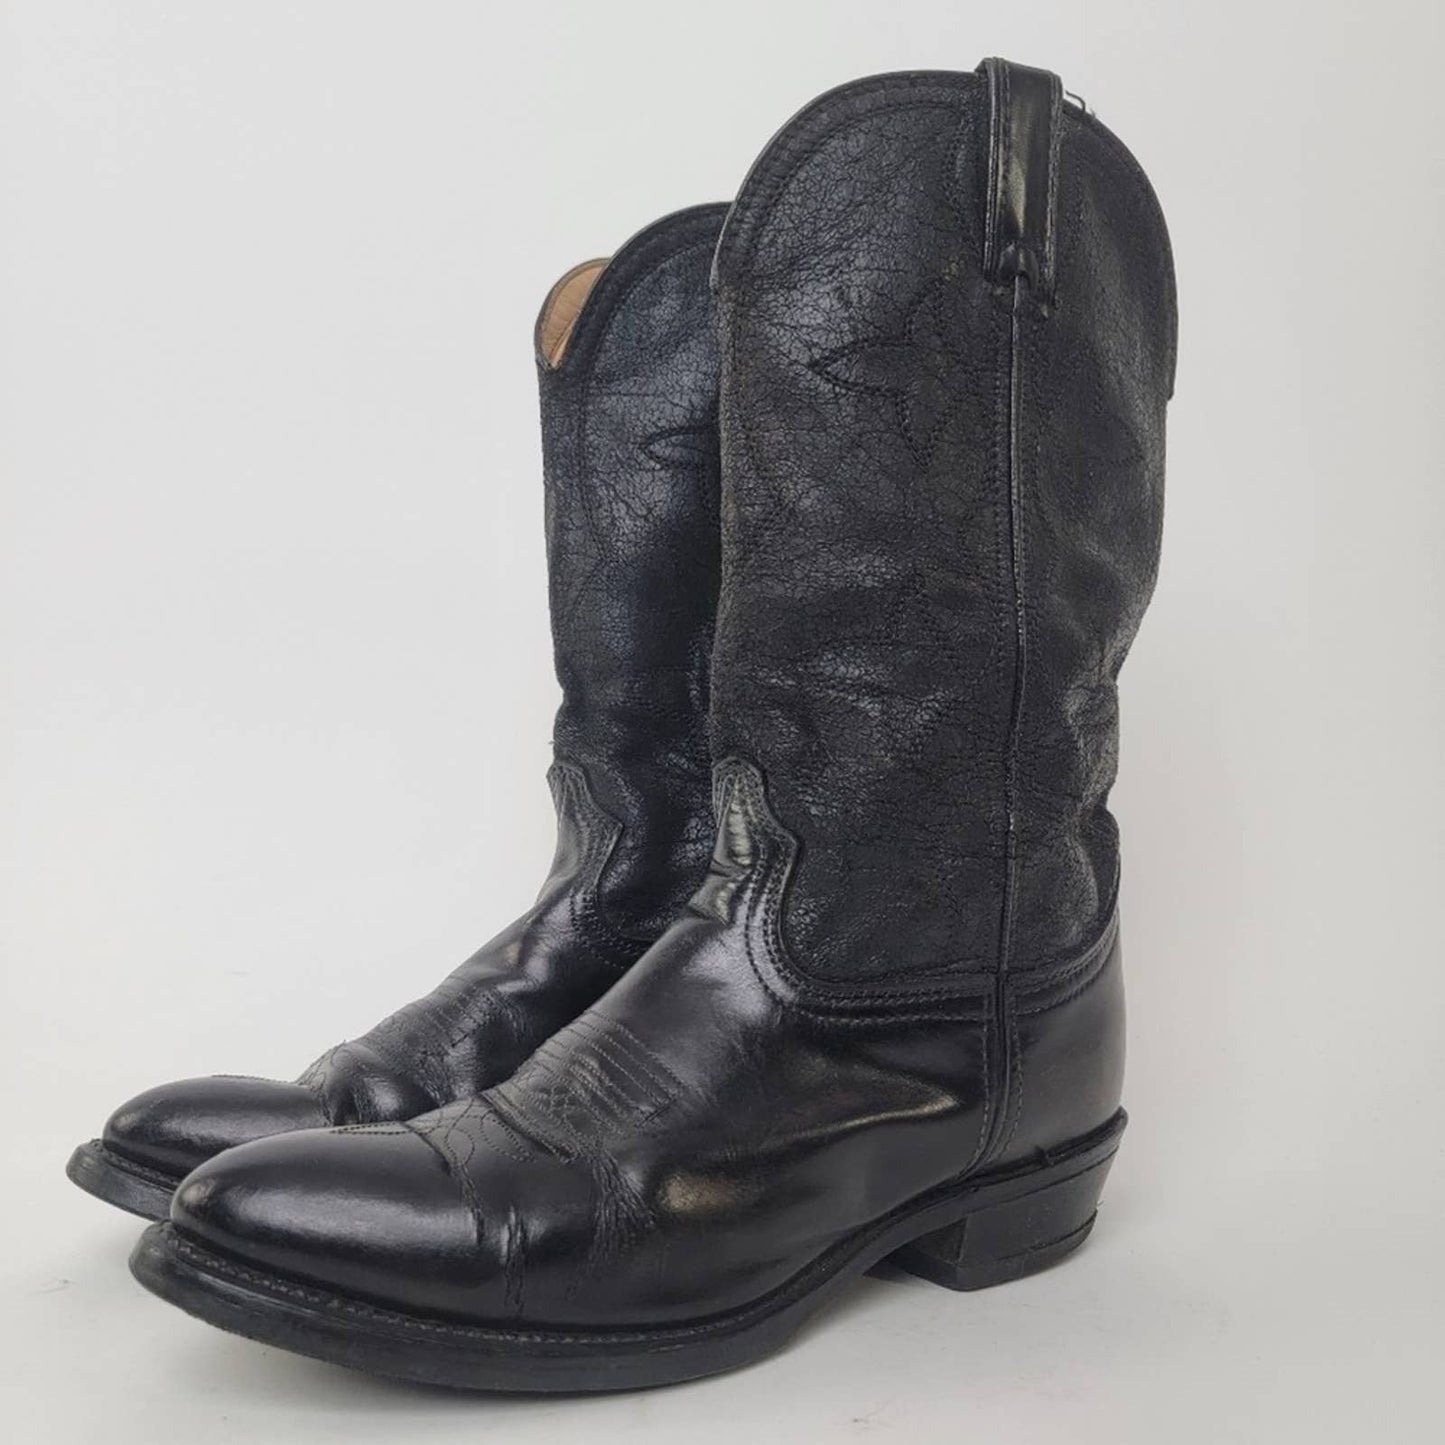 Durango Vintage Western Cowboy Boots - 7.5/9